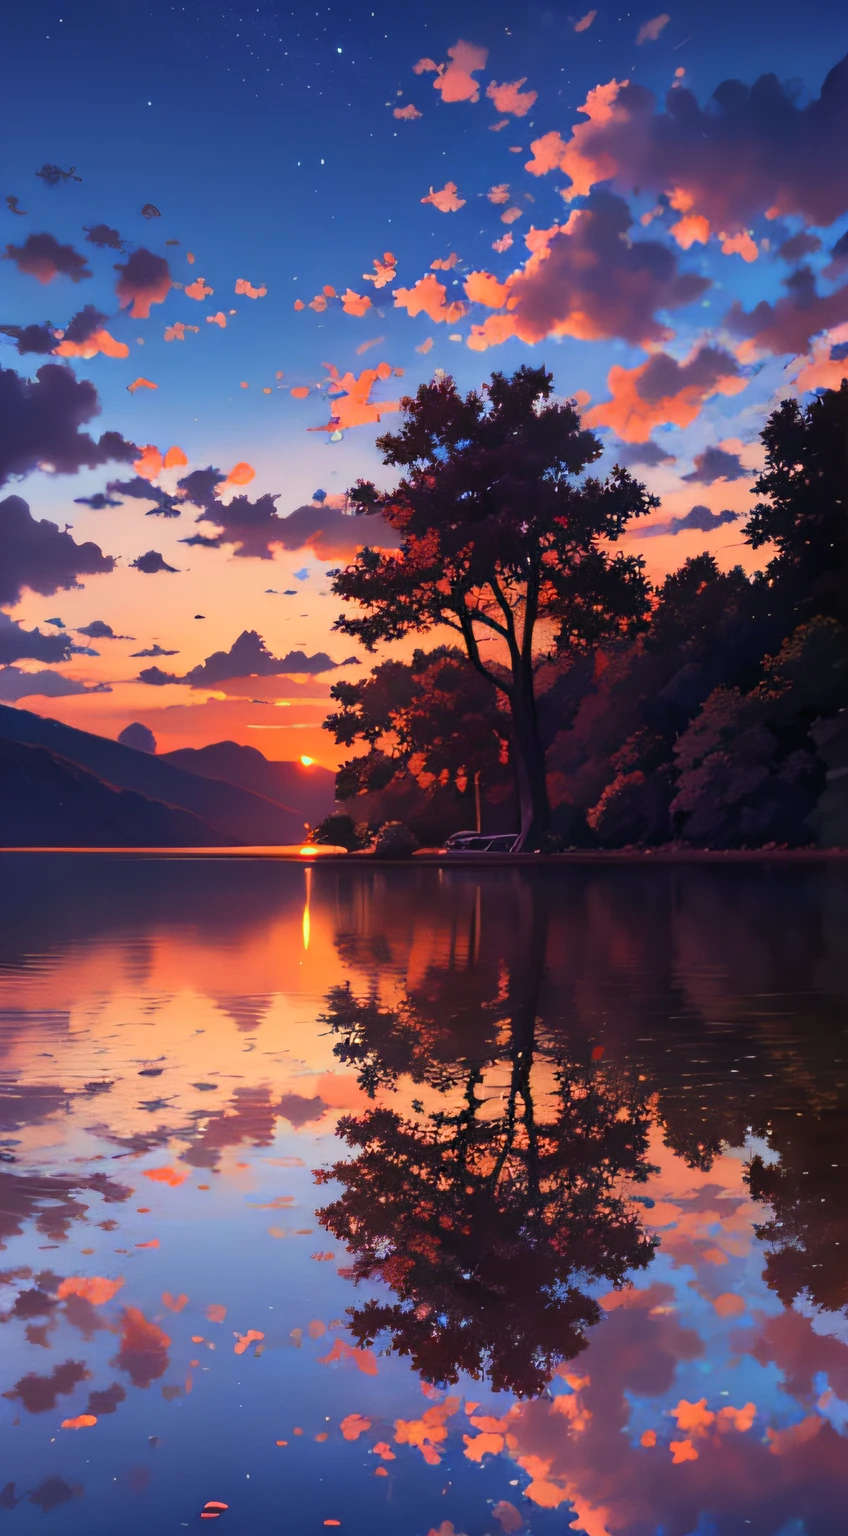 湖と木々を背景にした美しい夕日が見える, 色とりどりの空, シュールな色彩, 色鮮やかな夕焼け, カラフルな空, 空の素晴らしい反射, 素晴らしい空, 夢のような雰囲気 8k, 色とりどりの雲, 湖に映る色彩, シュールな空, 赤と青の反射, 火の反射, 美しい空, 美しく壮観な夕暮れ, 美しい夢のような風景, 素晴らしい空